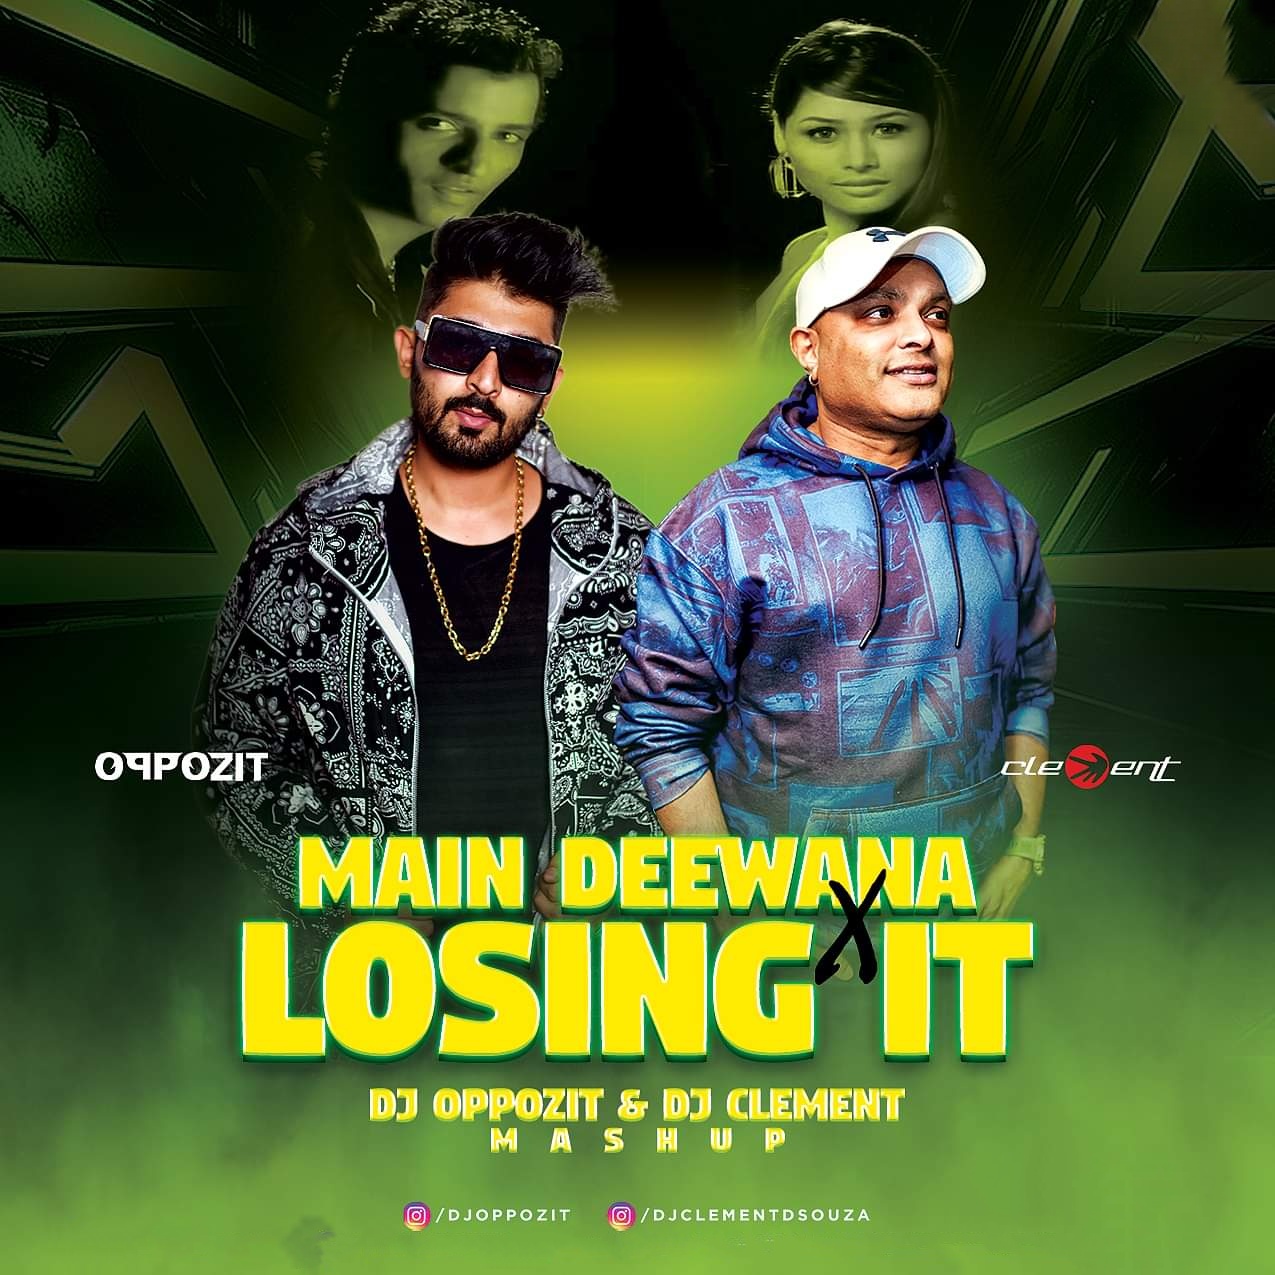 Main Deewana X Losing it (Mashup) - DJ Oppozit x DJ Clement